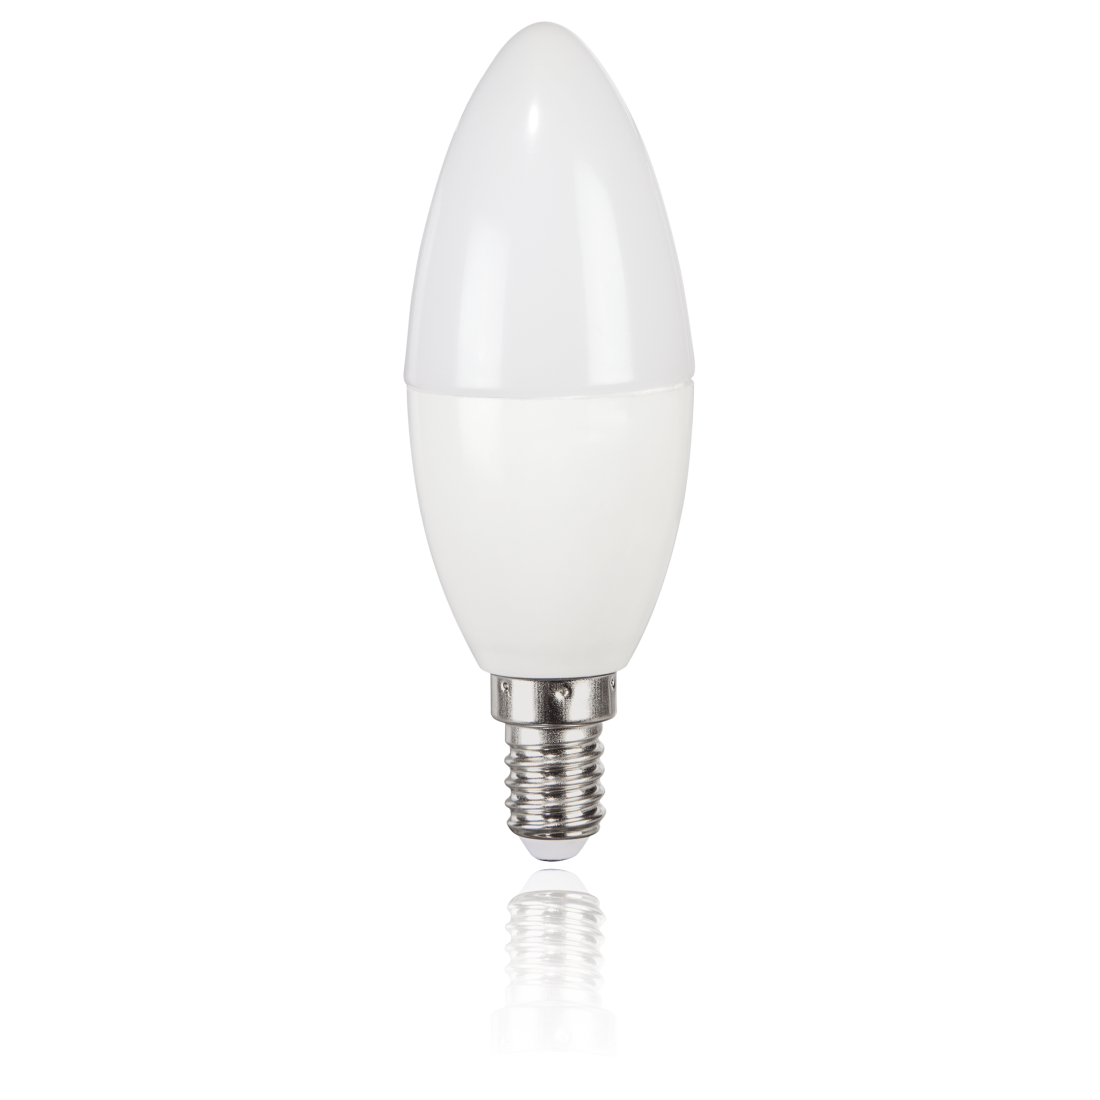 abx2 High-Res Image 2 - Xavax, Ampoule LED, E14, 806lm rempl. 60W, ampoule bougie, blanc chaud